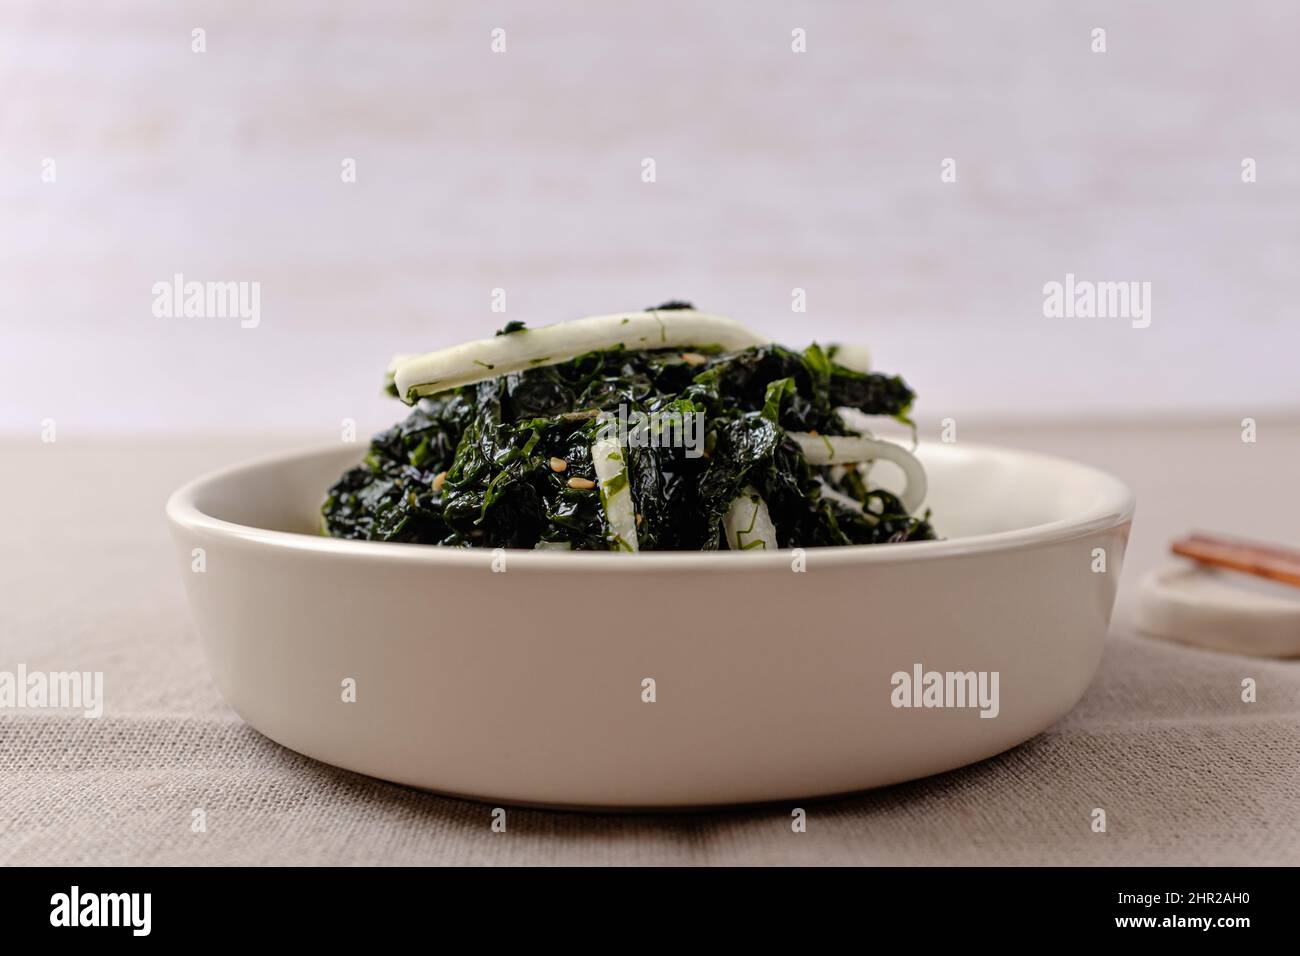 Alghe all'aceto immagini e fotografie stock ad alta risoluzione - Alamy